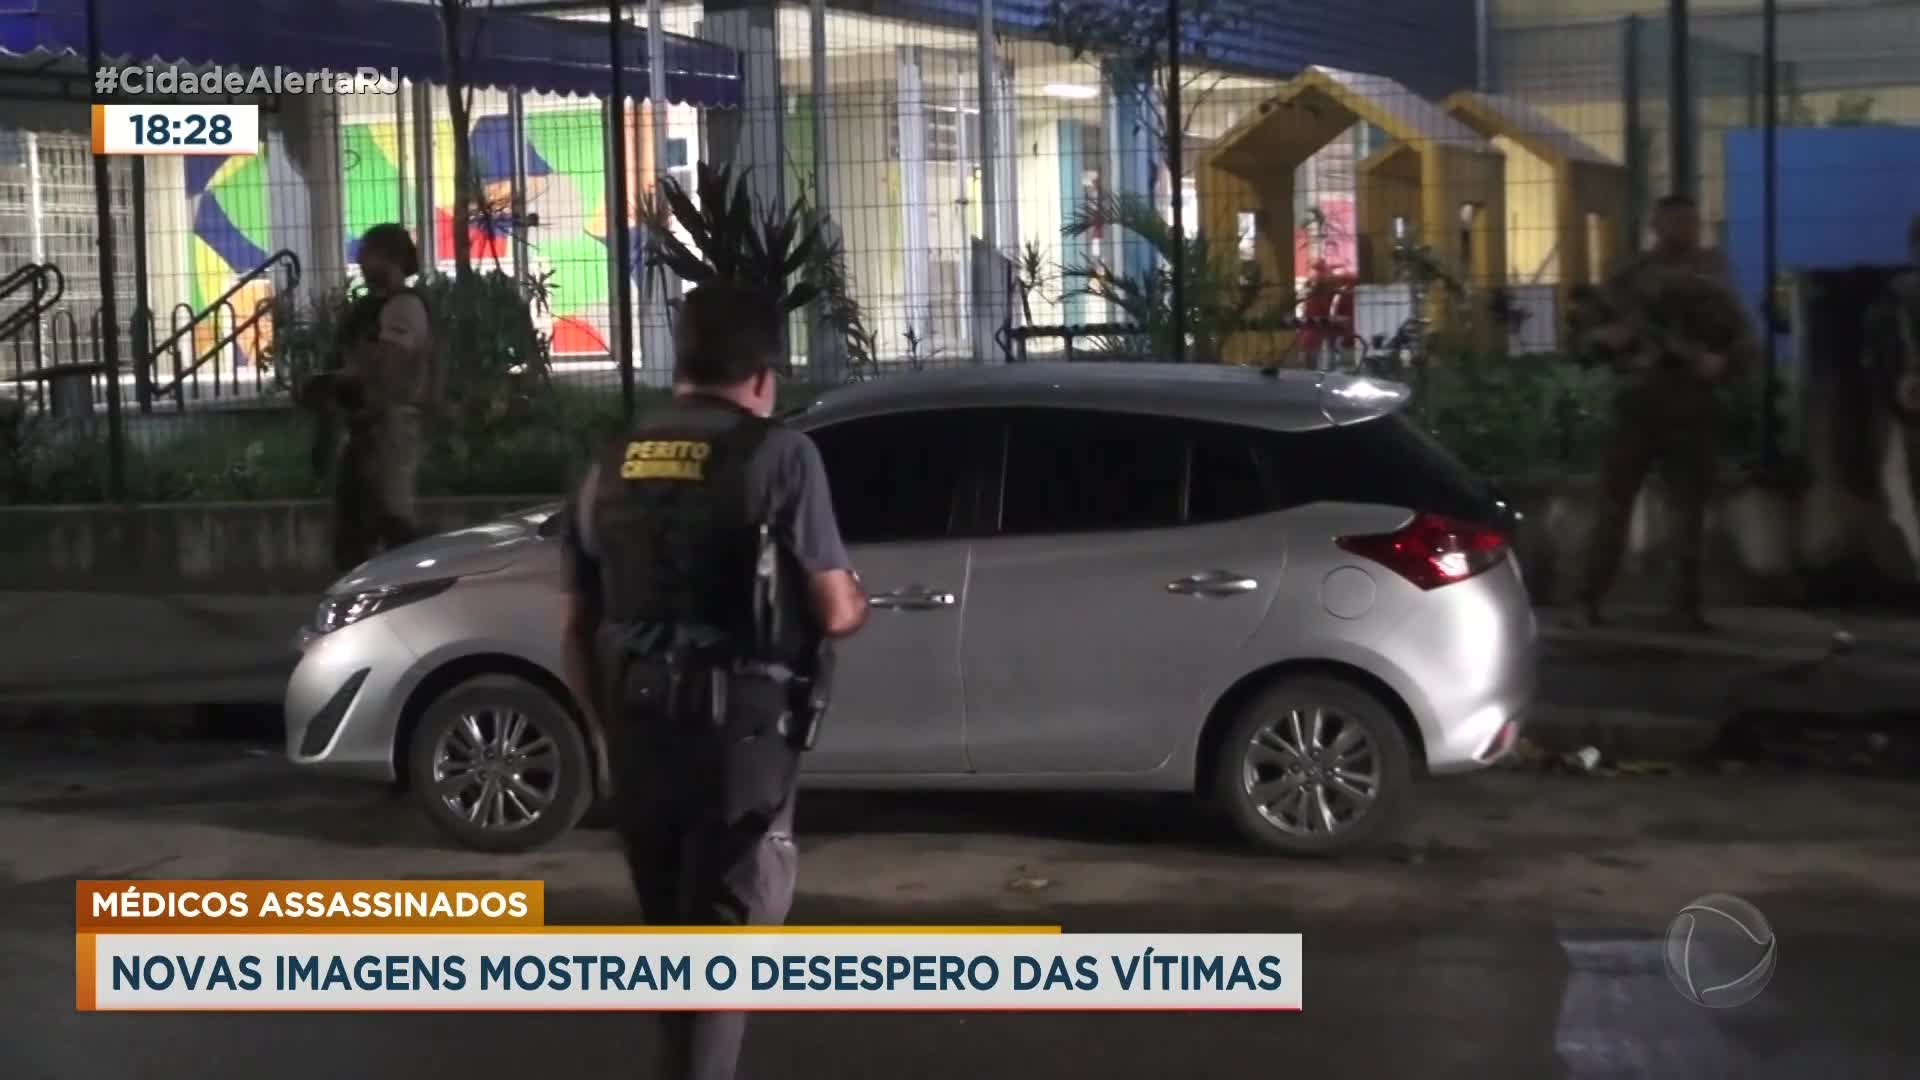 Vídeo: Governador diz que Rio é refém de 'máfia' após assassinato de médicos em quiosque na Barra da Tijuca